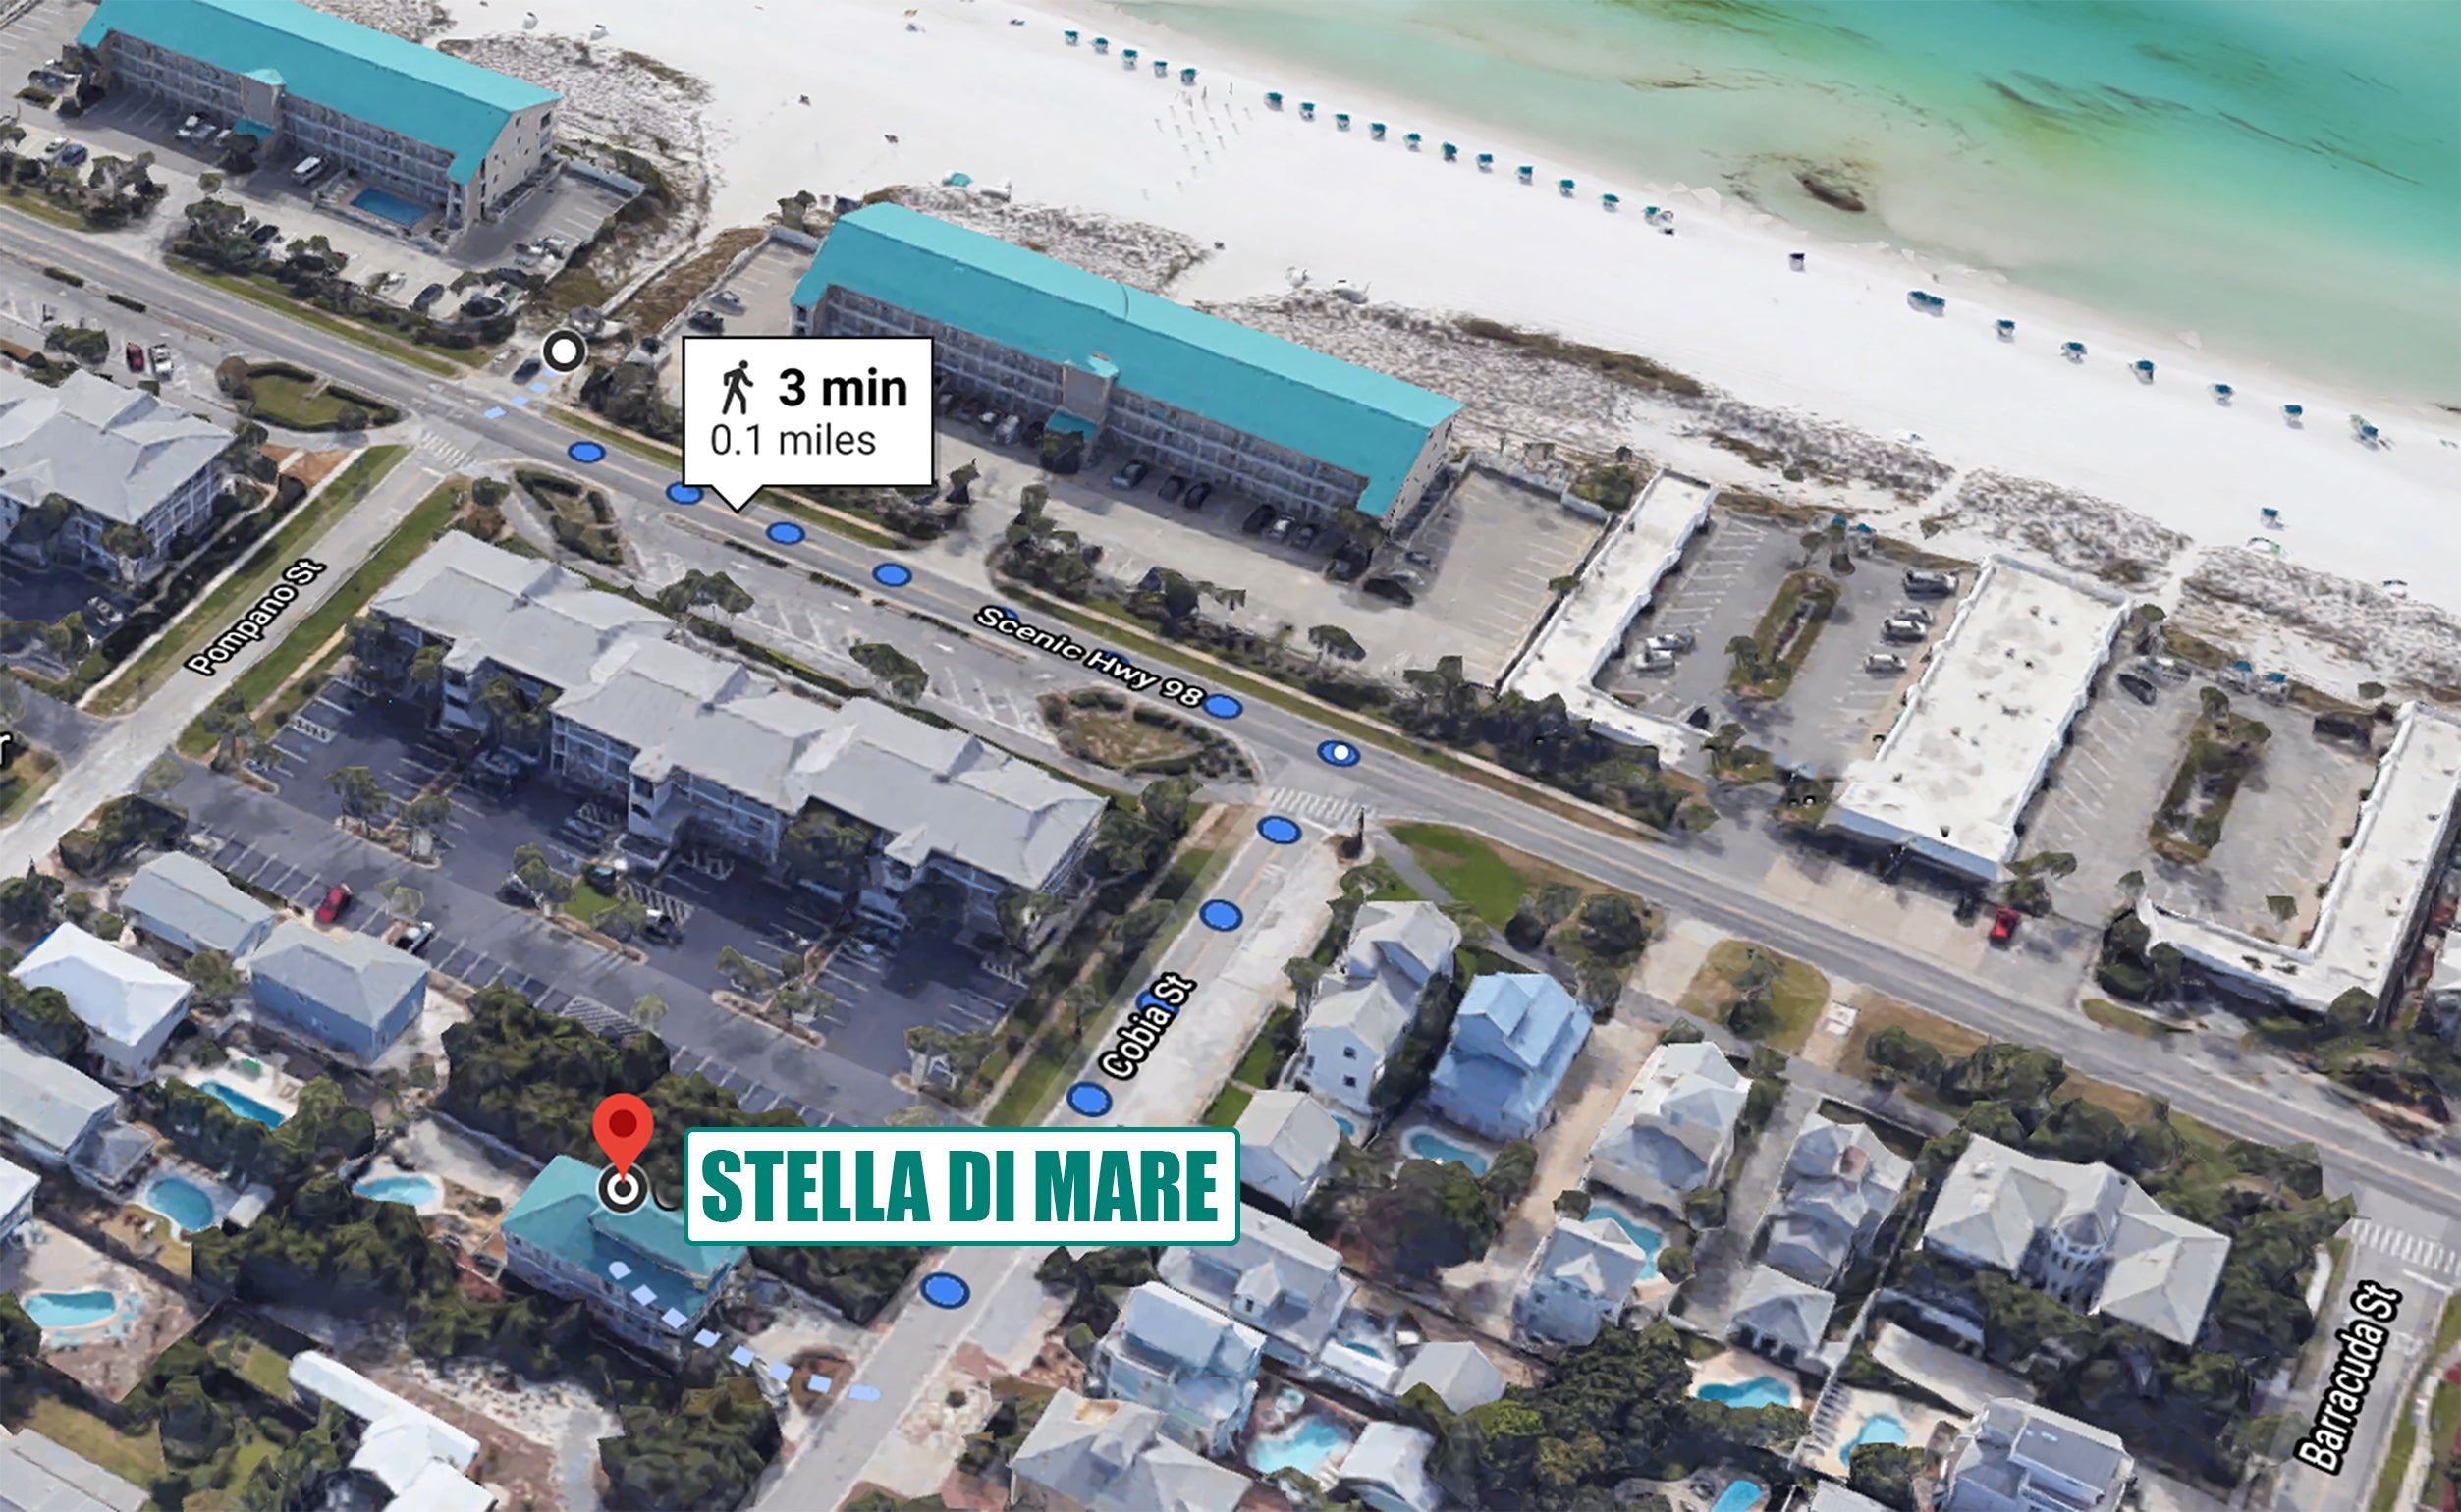 Stella Di Mare beach access map